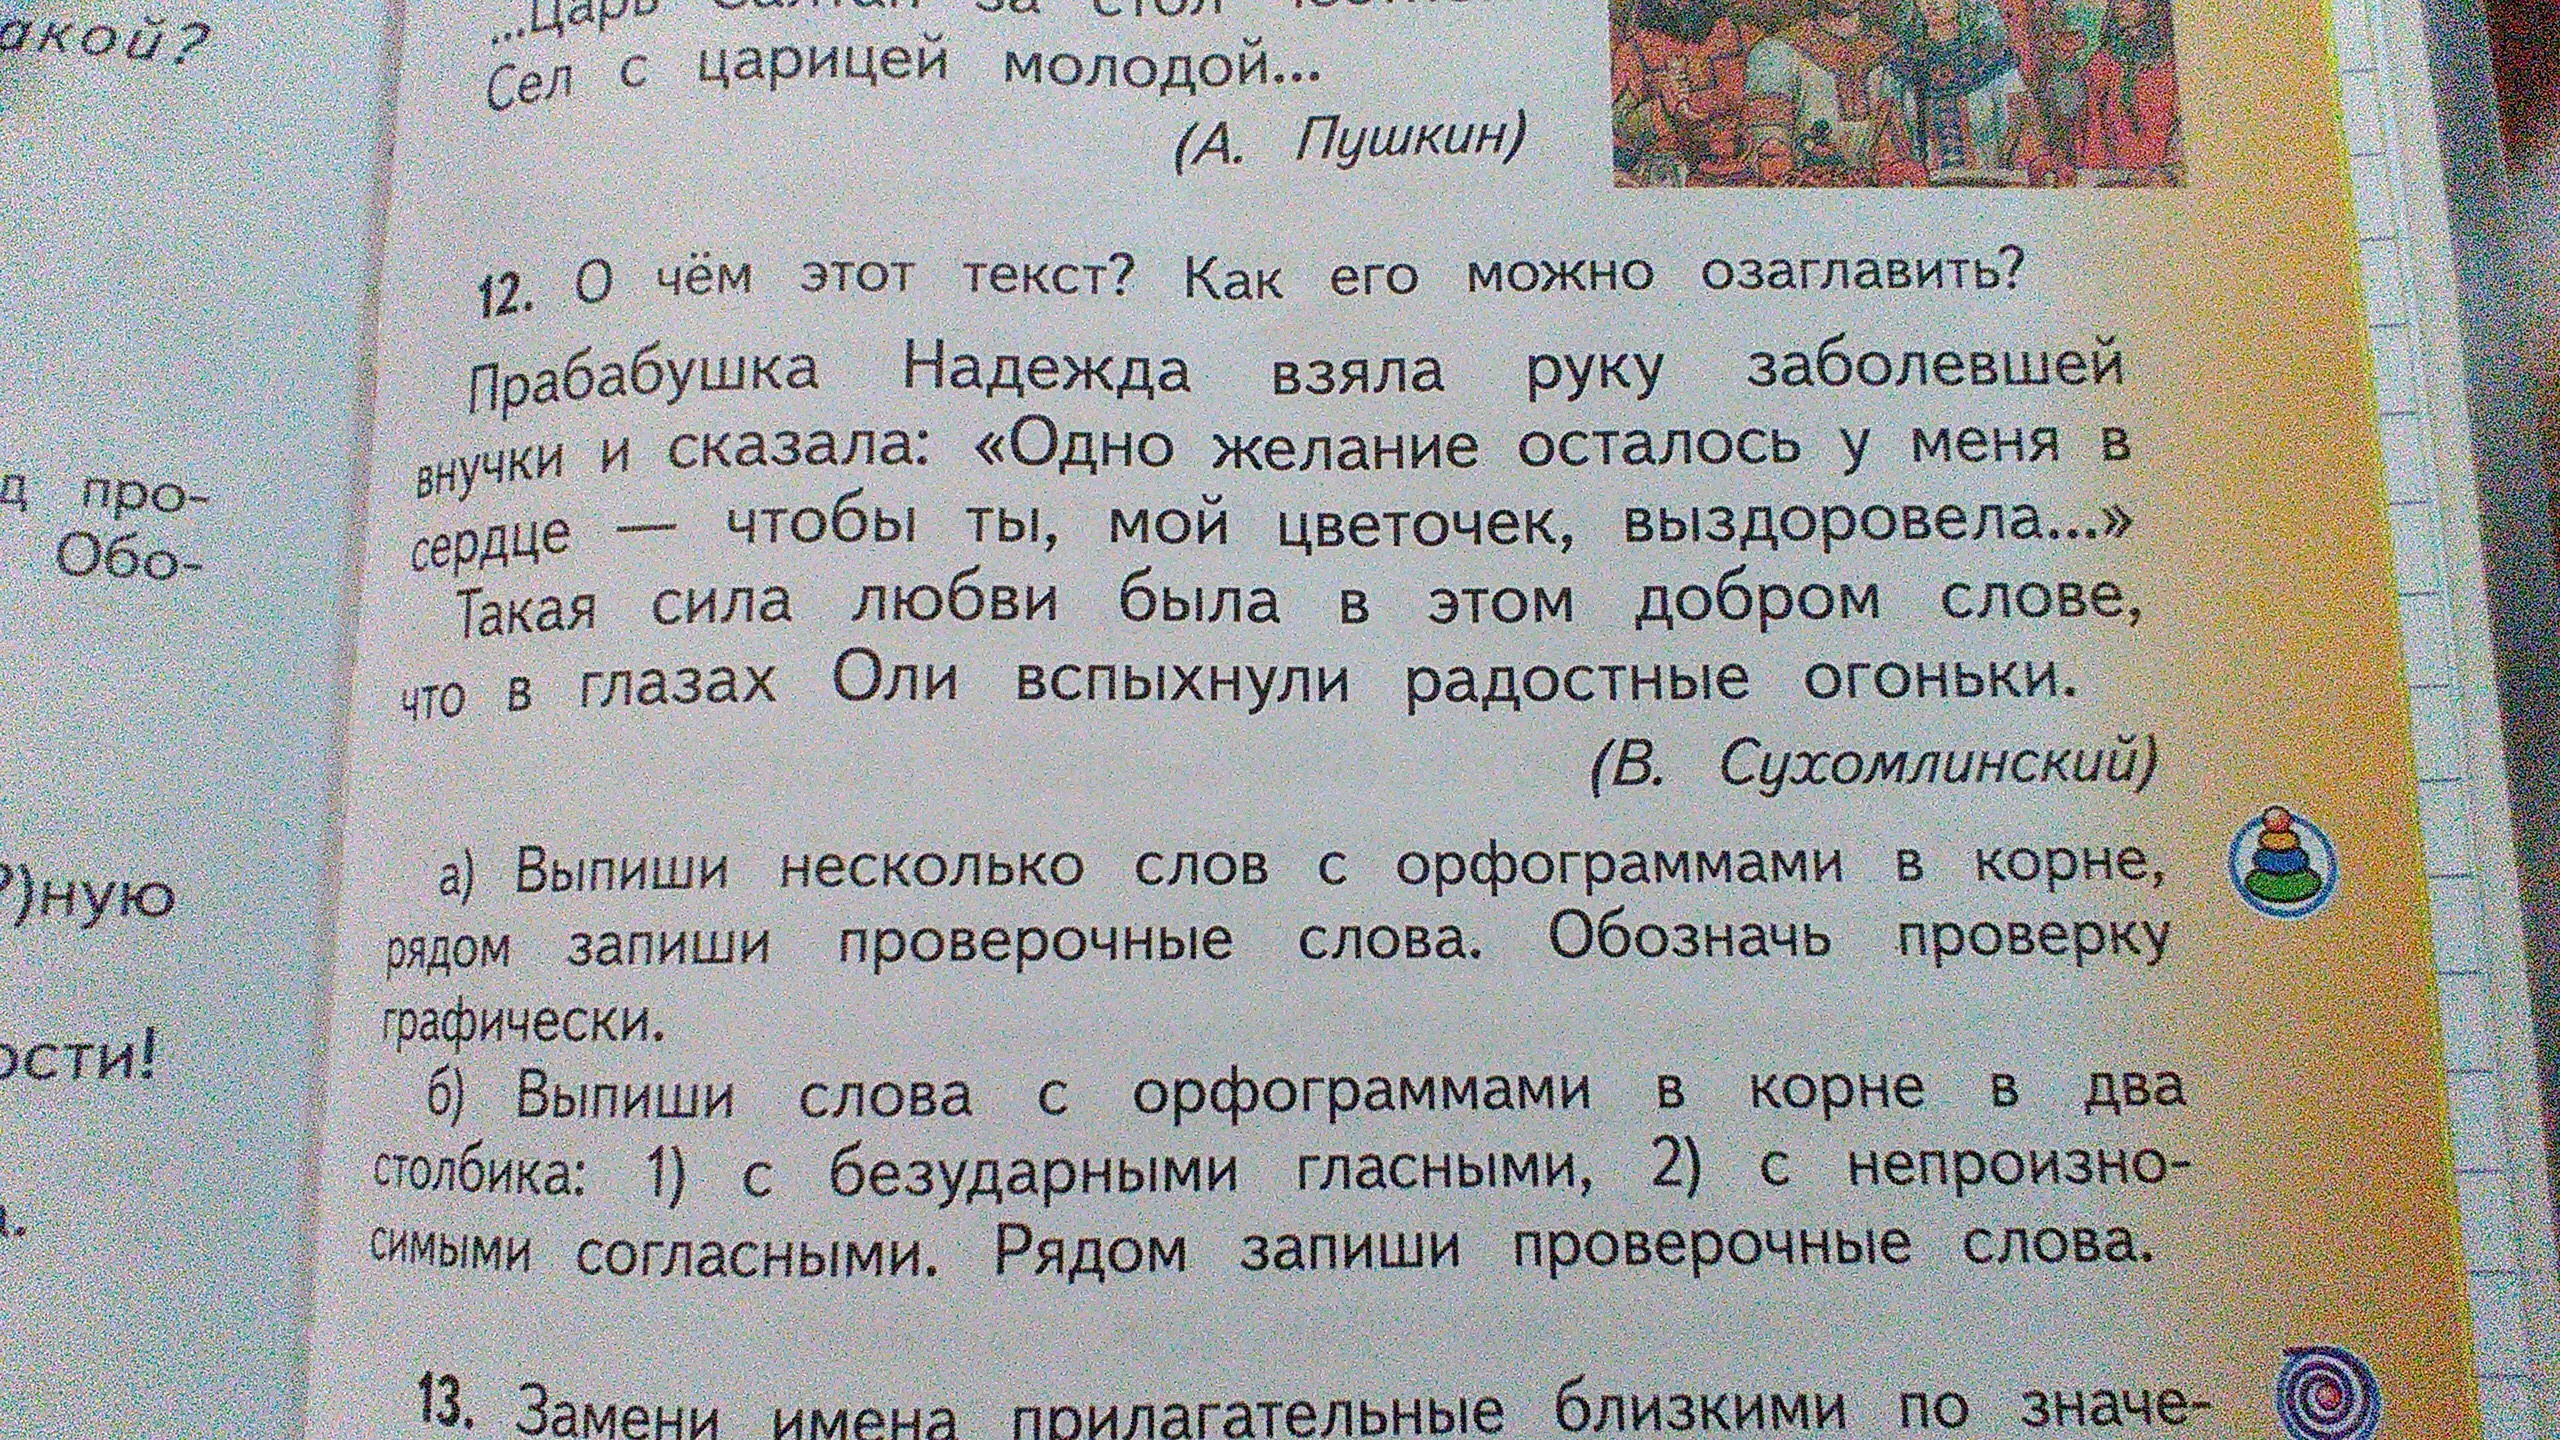 Упр 196 4 класс 2 часть. Страница 121 русский язык 1 класс. Русский язык 2 класс стр 121 упр 196.